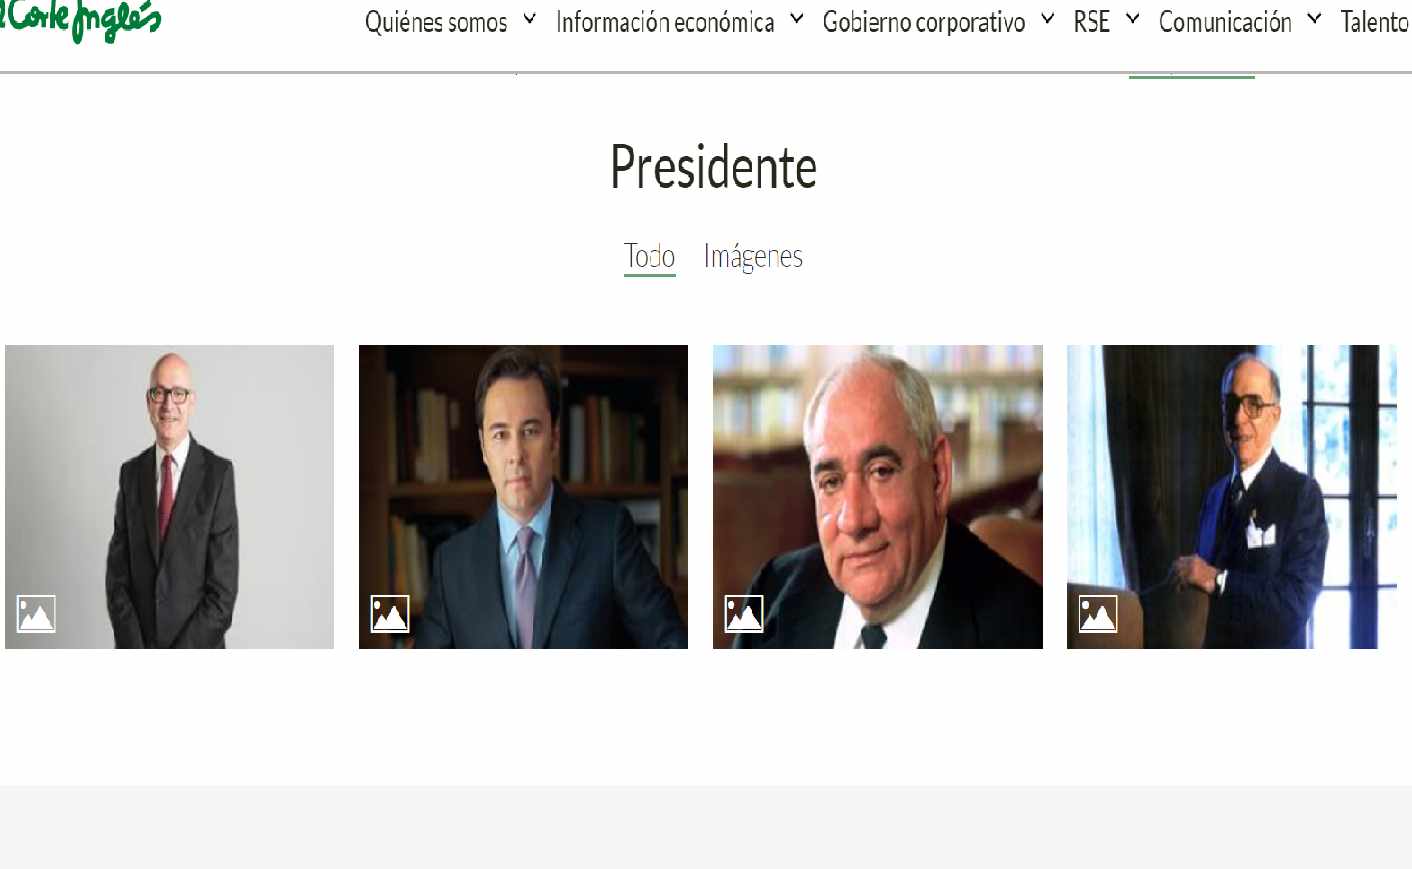 Detalle de la página web de El Corte Inglés, donde aparecen los cuatro últimos presidentes en el 2018